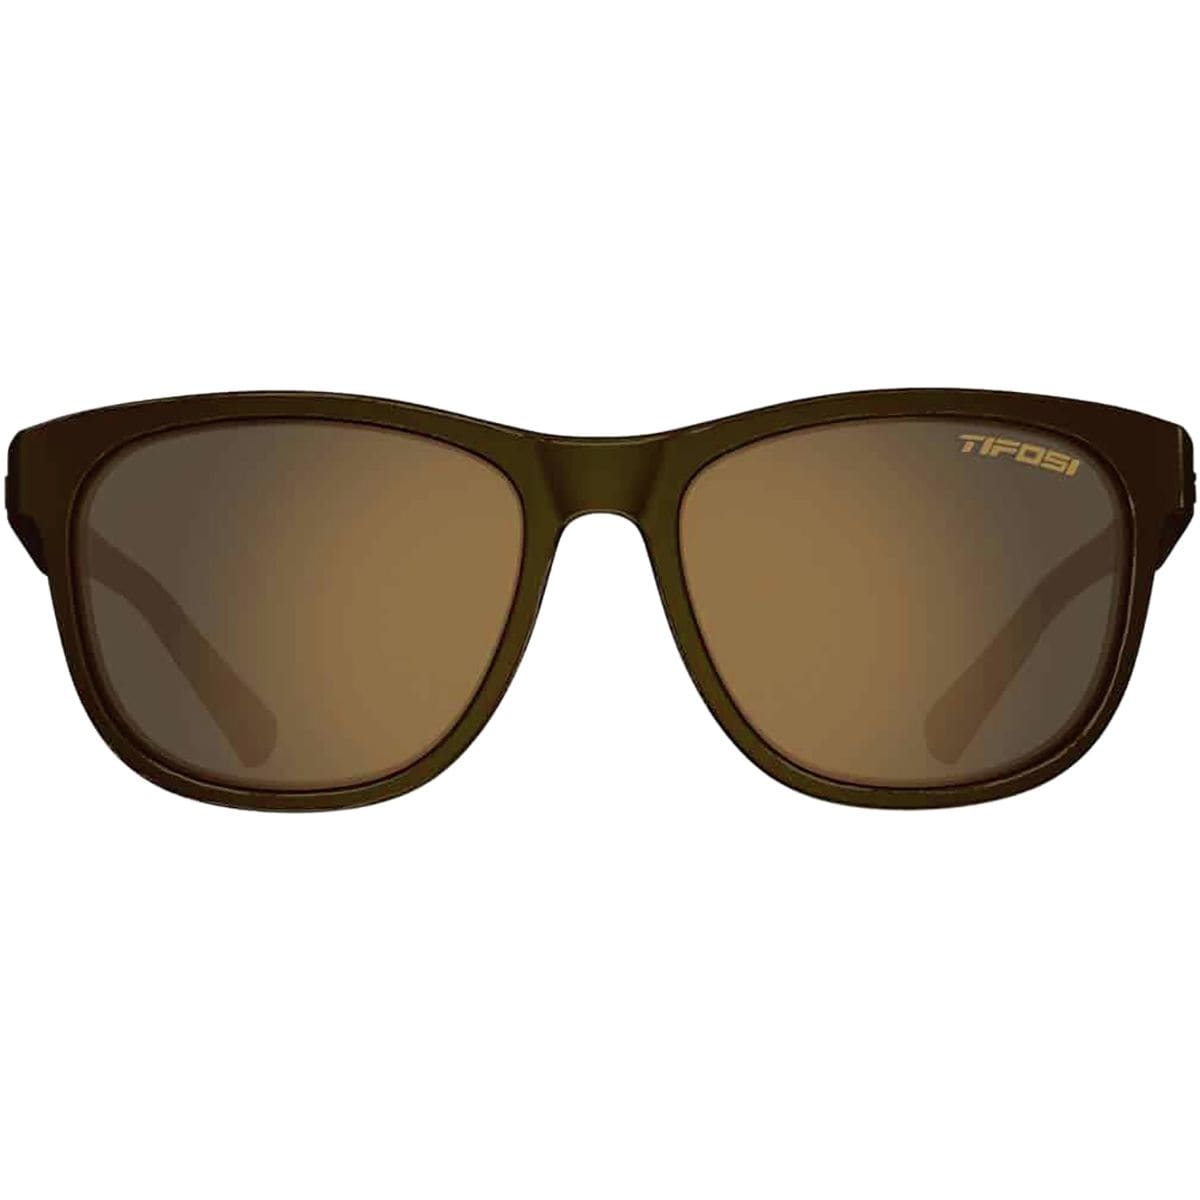 Полароид очки 4061s. Очки полароид PLD 4061/S. Polaroid PLD 2073/S. Gant очки солнцезащитные. Front sunglass